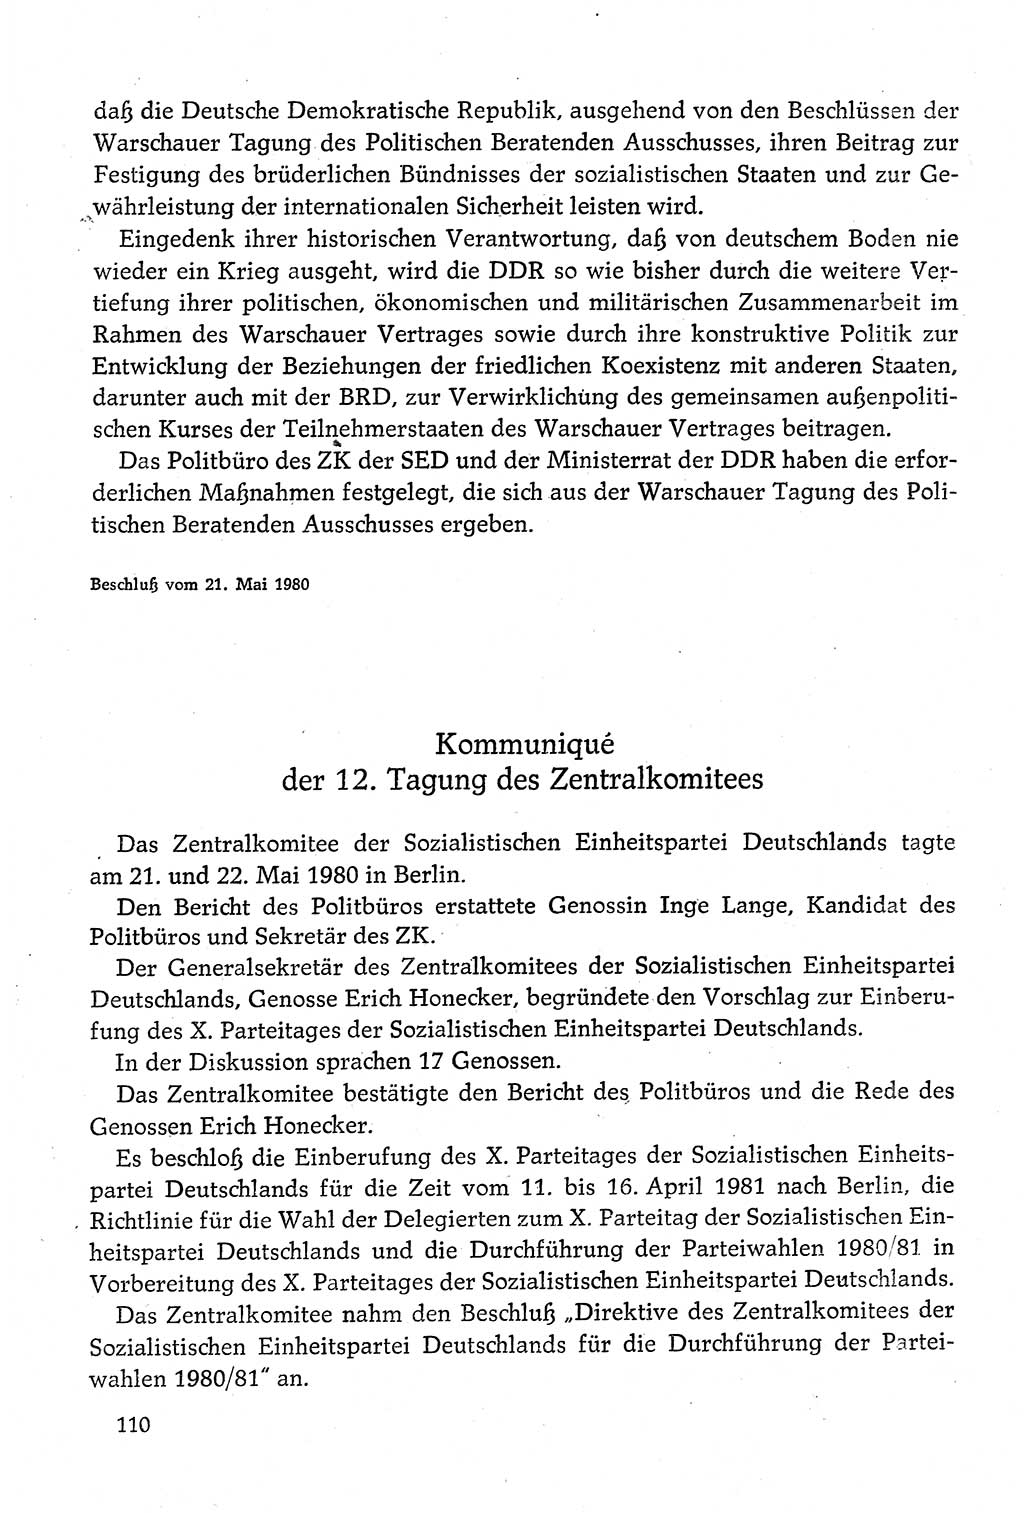 Dokumente der Sozialistischen Einheitspartei Deutschlands (SED) [Deutsche Demokratische Republik (DDR)] 1980-1981, Seite 110 (Dok. SED DDR 1980-1981, S. 110)